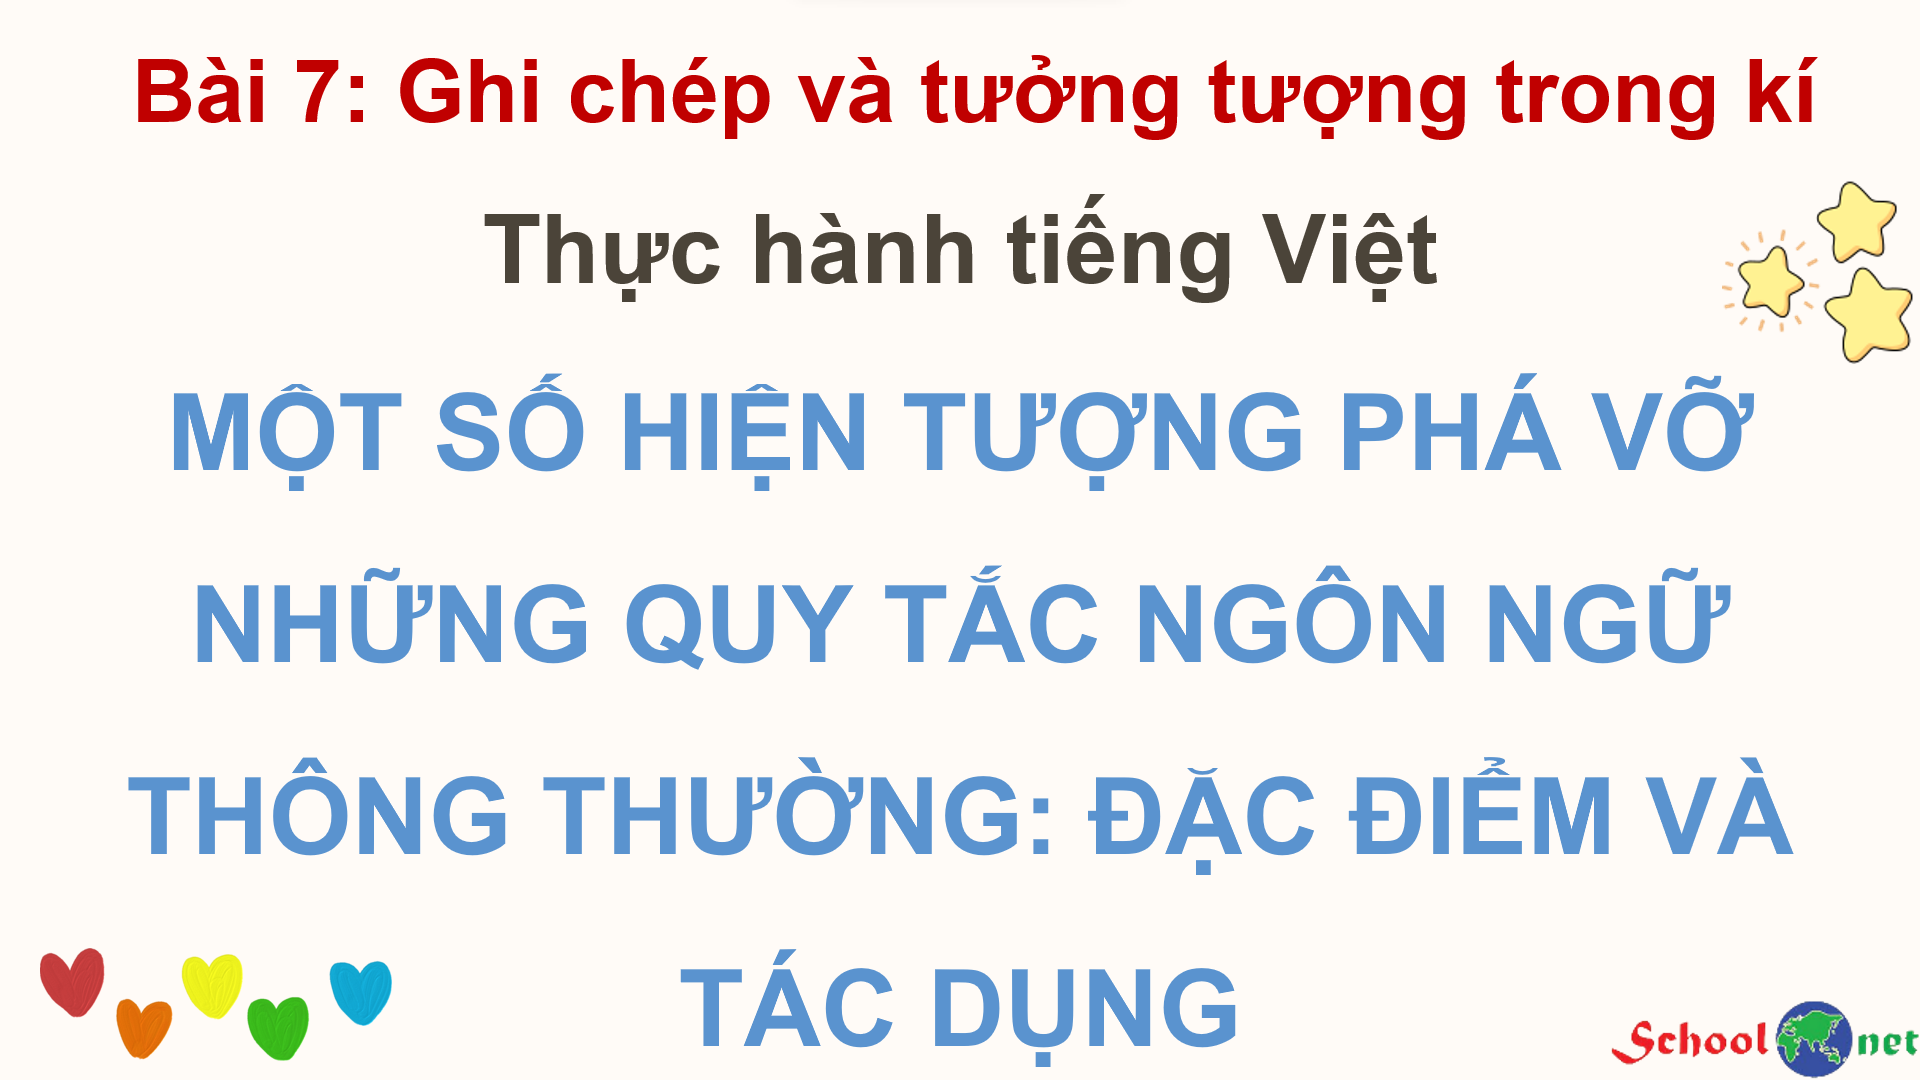 Bài 7: Thực hành tiếng Việt: Một số hiện tượng phá vỡ những quy tắc ngôn ngữ thông thường: Đặc điểm và tác dụng - Bộ sách Kết nối tri thức với cuộc sống